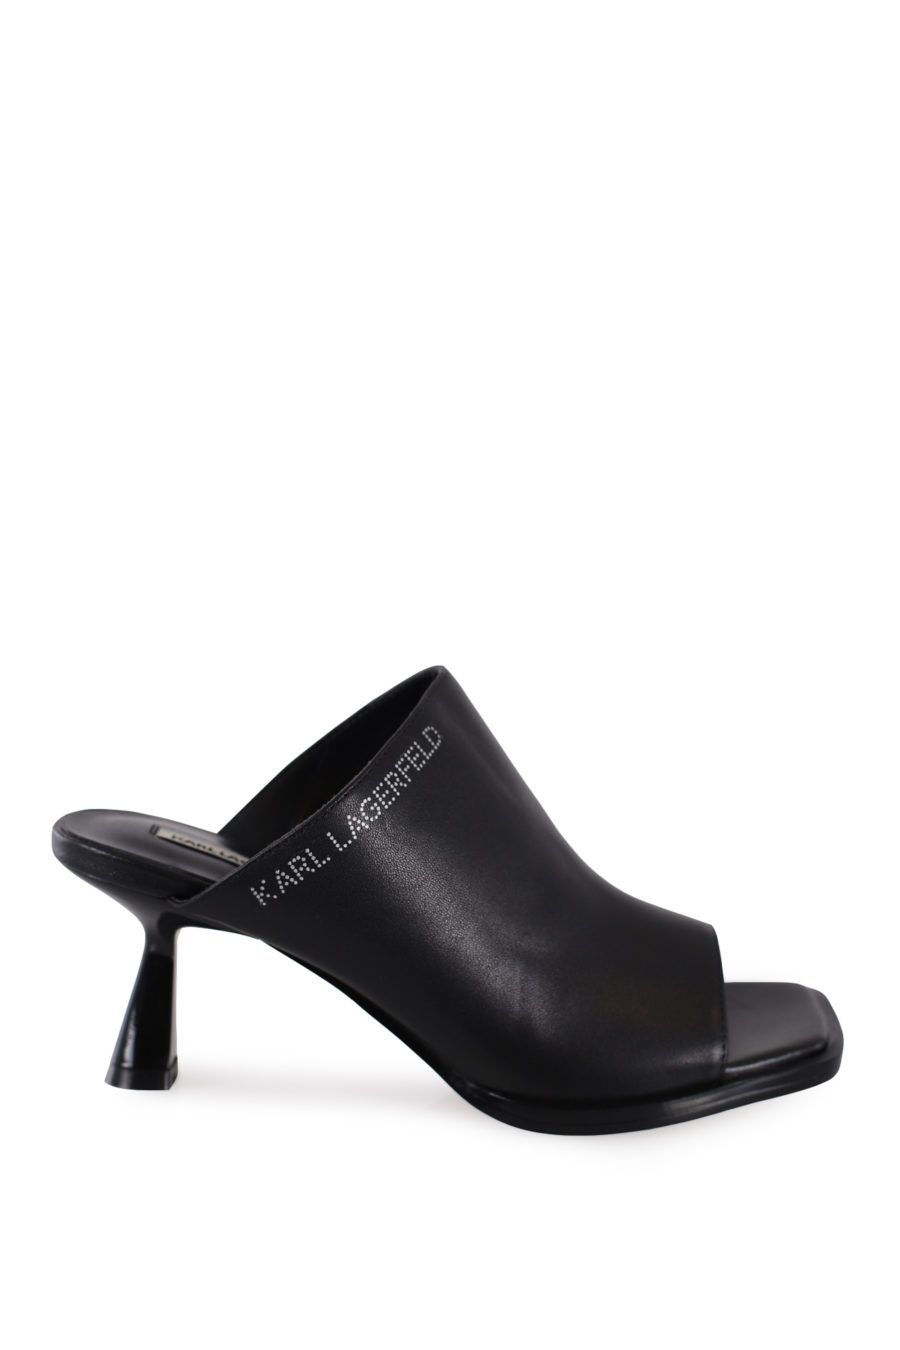 Black mule sandals with heel - IMG 8673